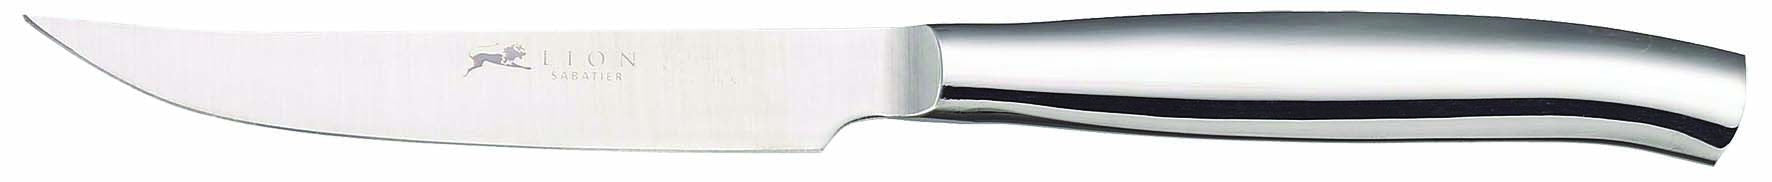 Cuchillo para Carne de Acero Inoxidable Forjado 11 cm